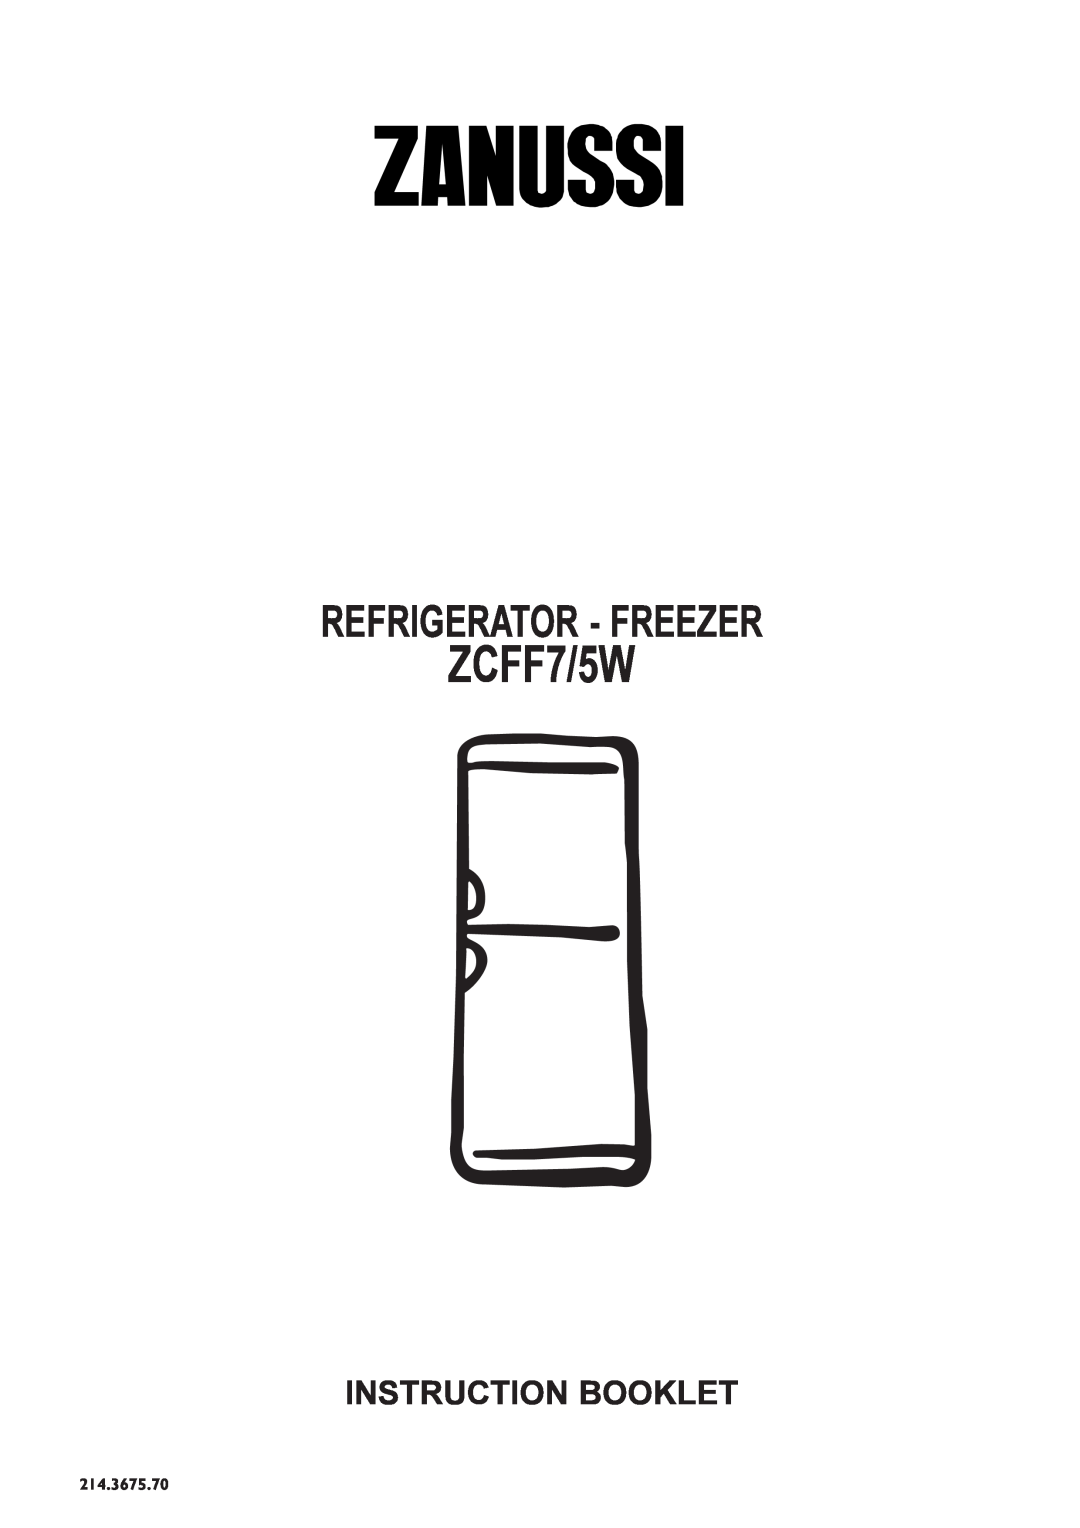 Zanussi ZCFF7/5W manual Instruction Booklet, Refrigerator - Freezer, 214.3675.70 